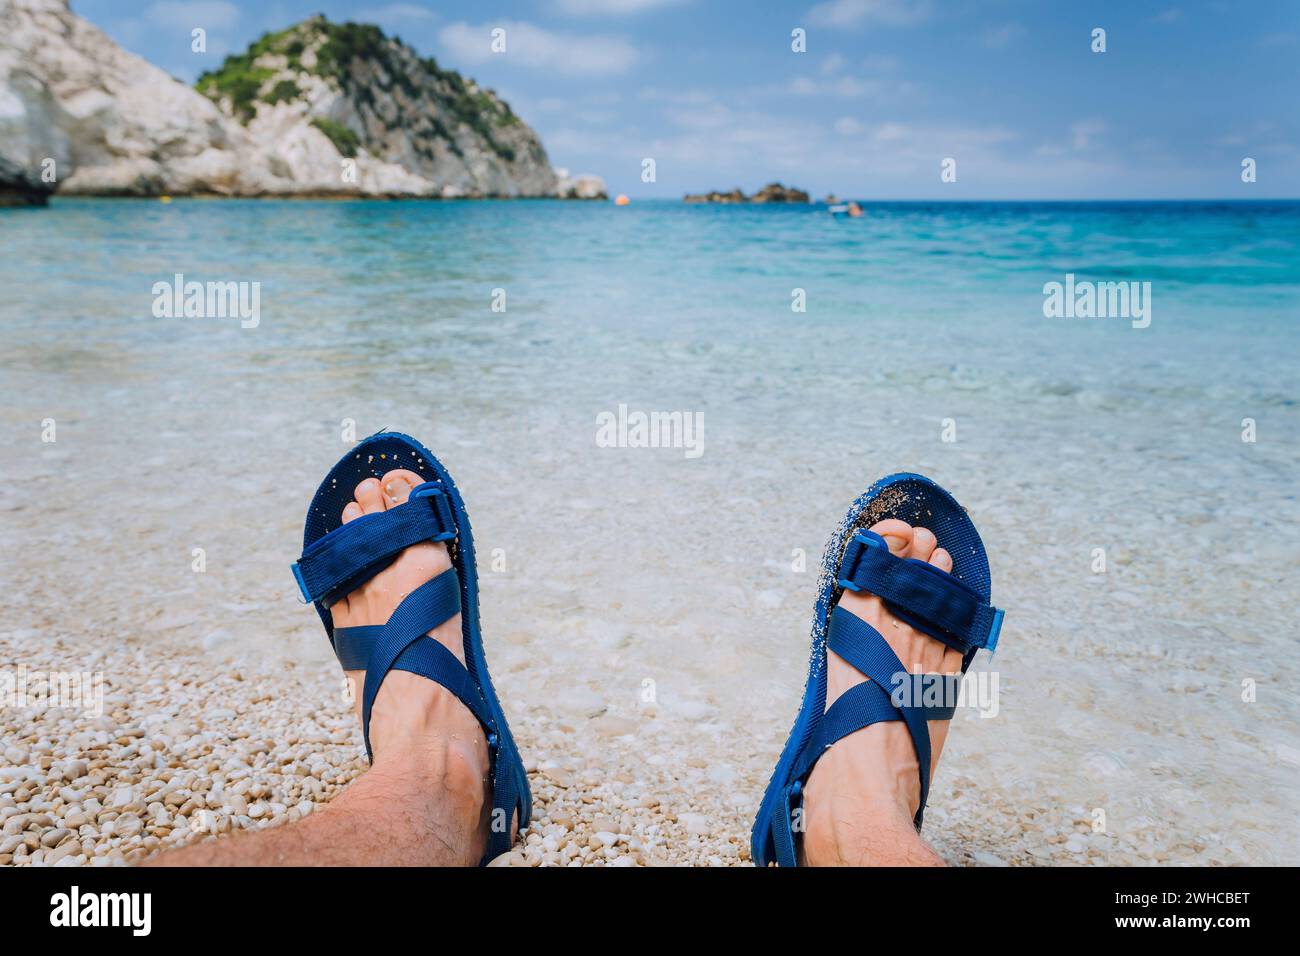 Junge männliche Füße tragen blaue Flip-Flop-Sandalen, die am Kieselstrand vor blauem Meerwasser und Felsen im Hintergrund am Horizont sonnen. Stockfoto